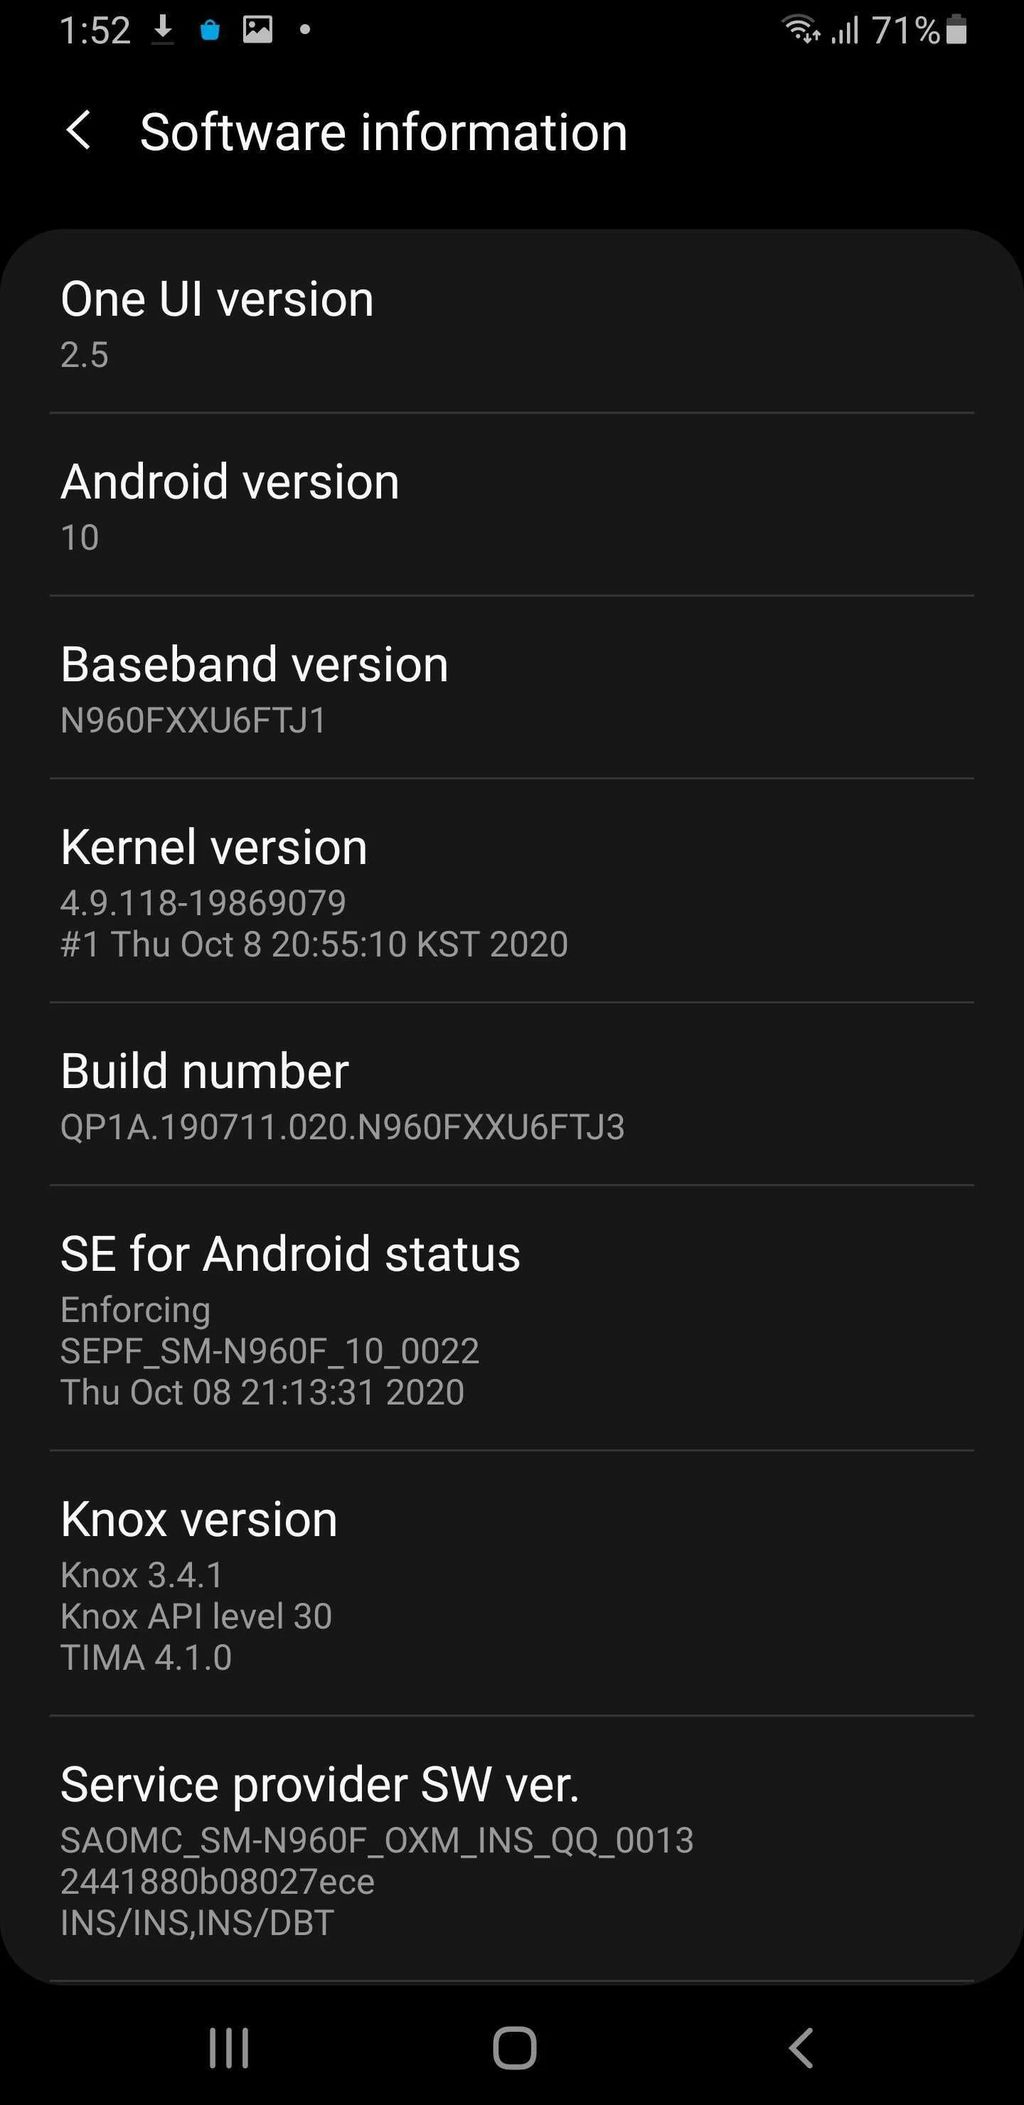 Galaxy Note 9 atualizado para One UI 2.5 (Imagem: Reprodução/SamMobile)